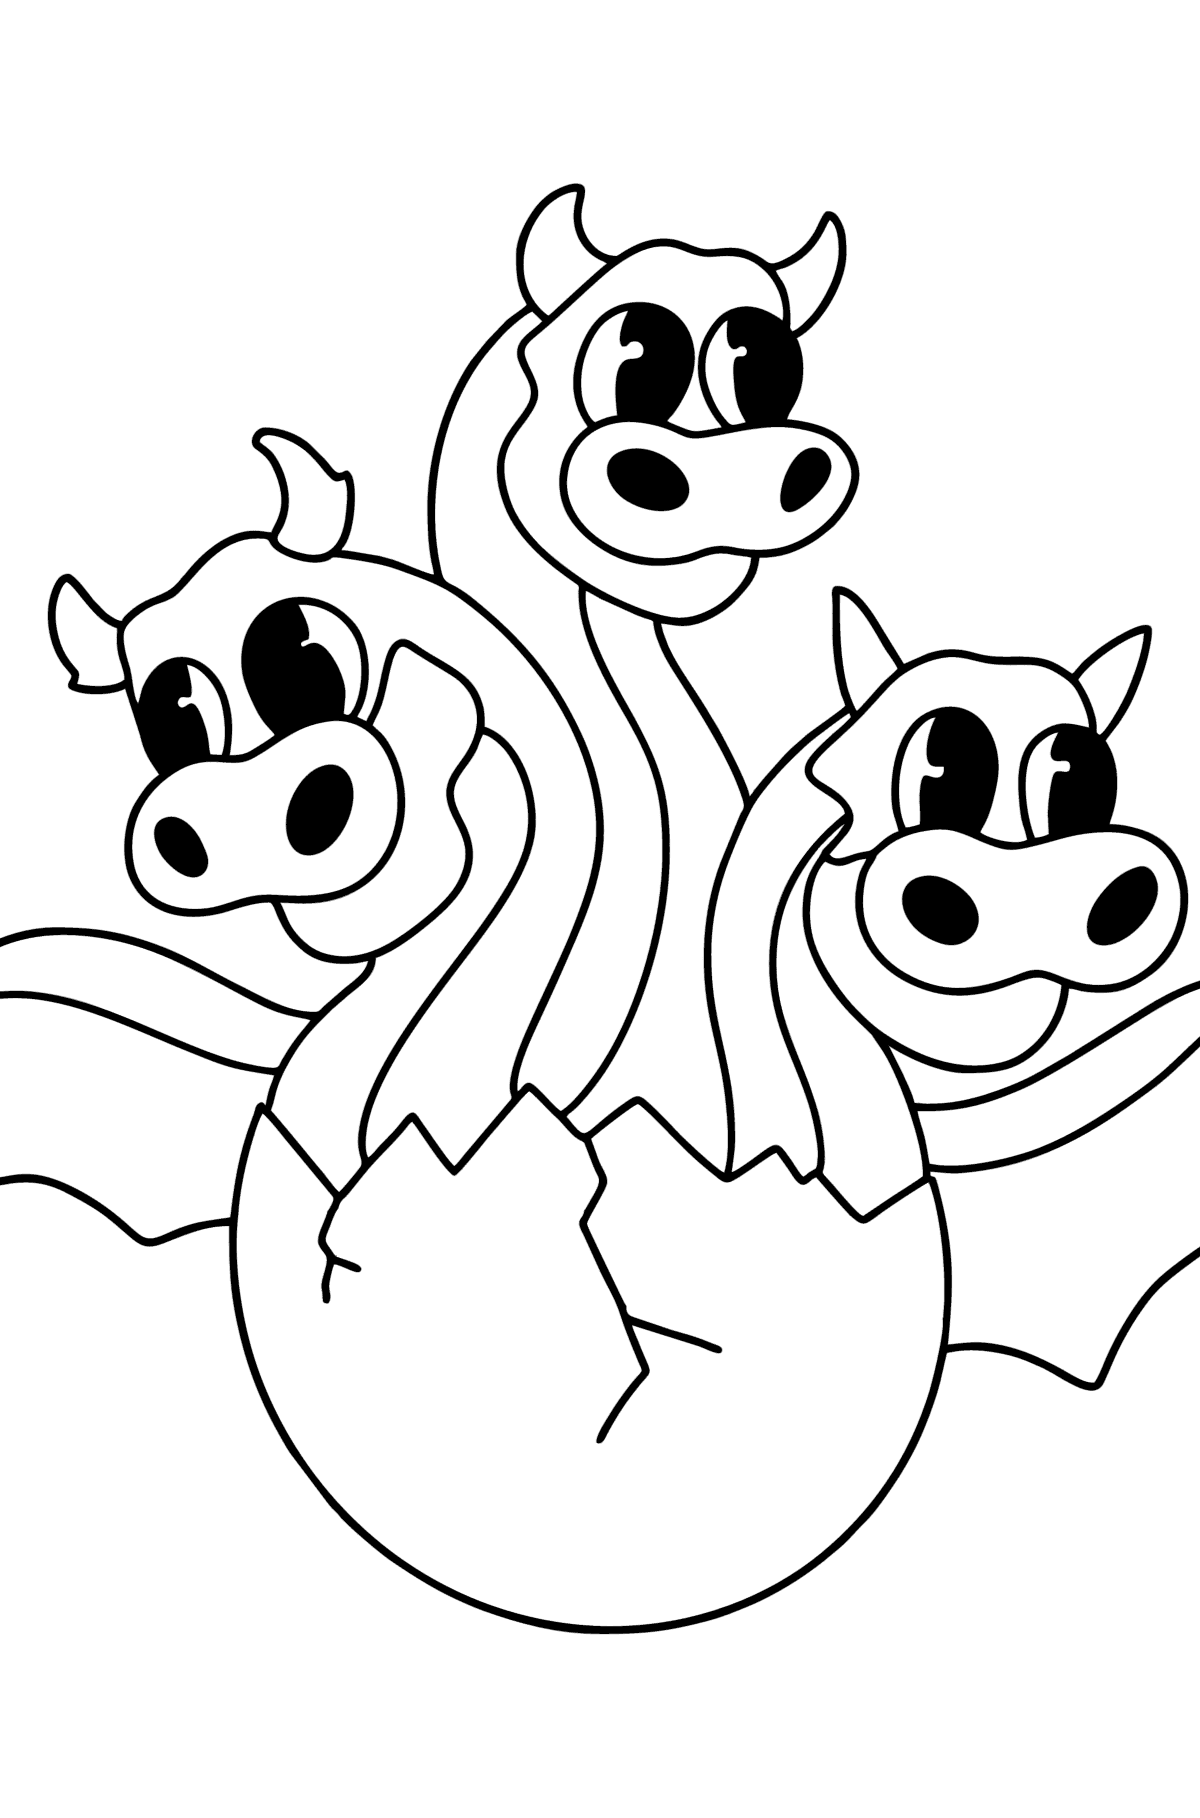 Раскраска Дракон с тремя головами - Картинки для Детей